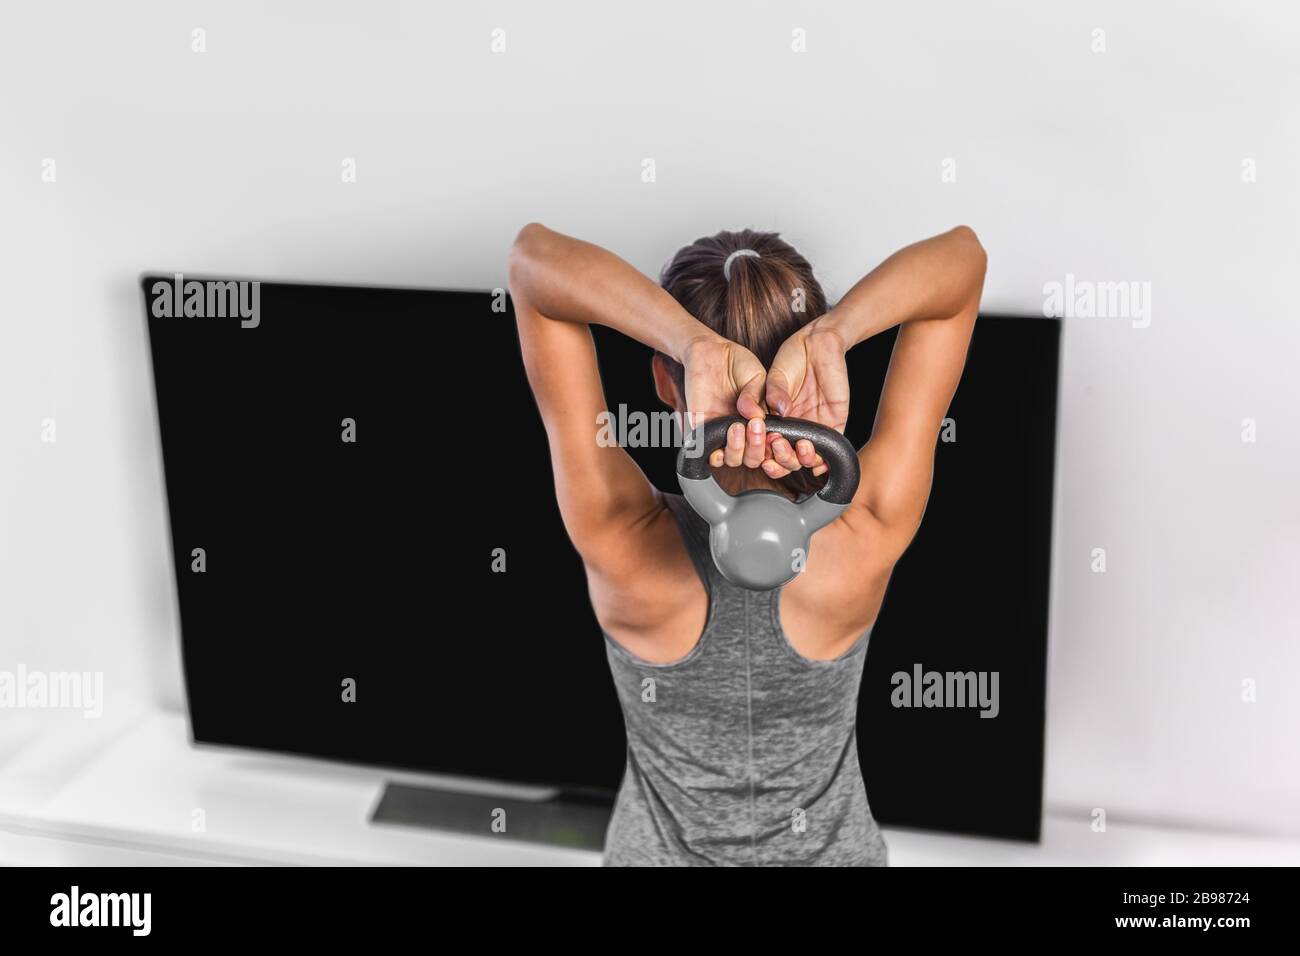 Home esercizio di forza allenamento allenamento overhead triceps extension muscoli esercizi donna che guarda online tv fitness class live streaming a casa Foto Stock